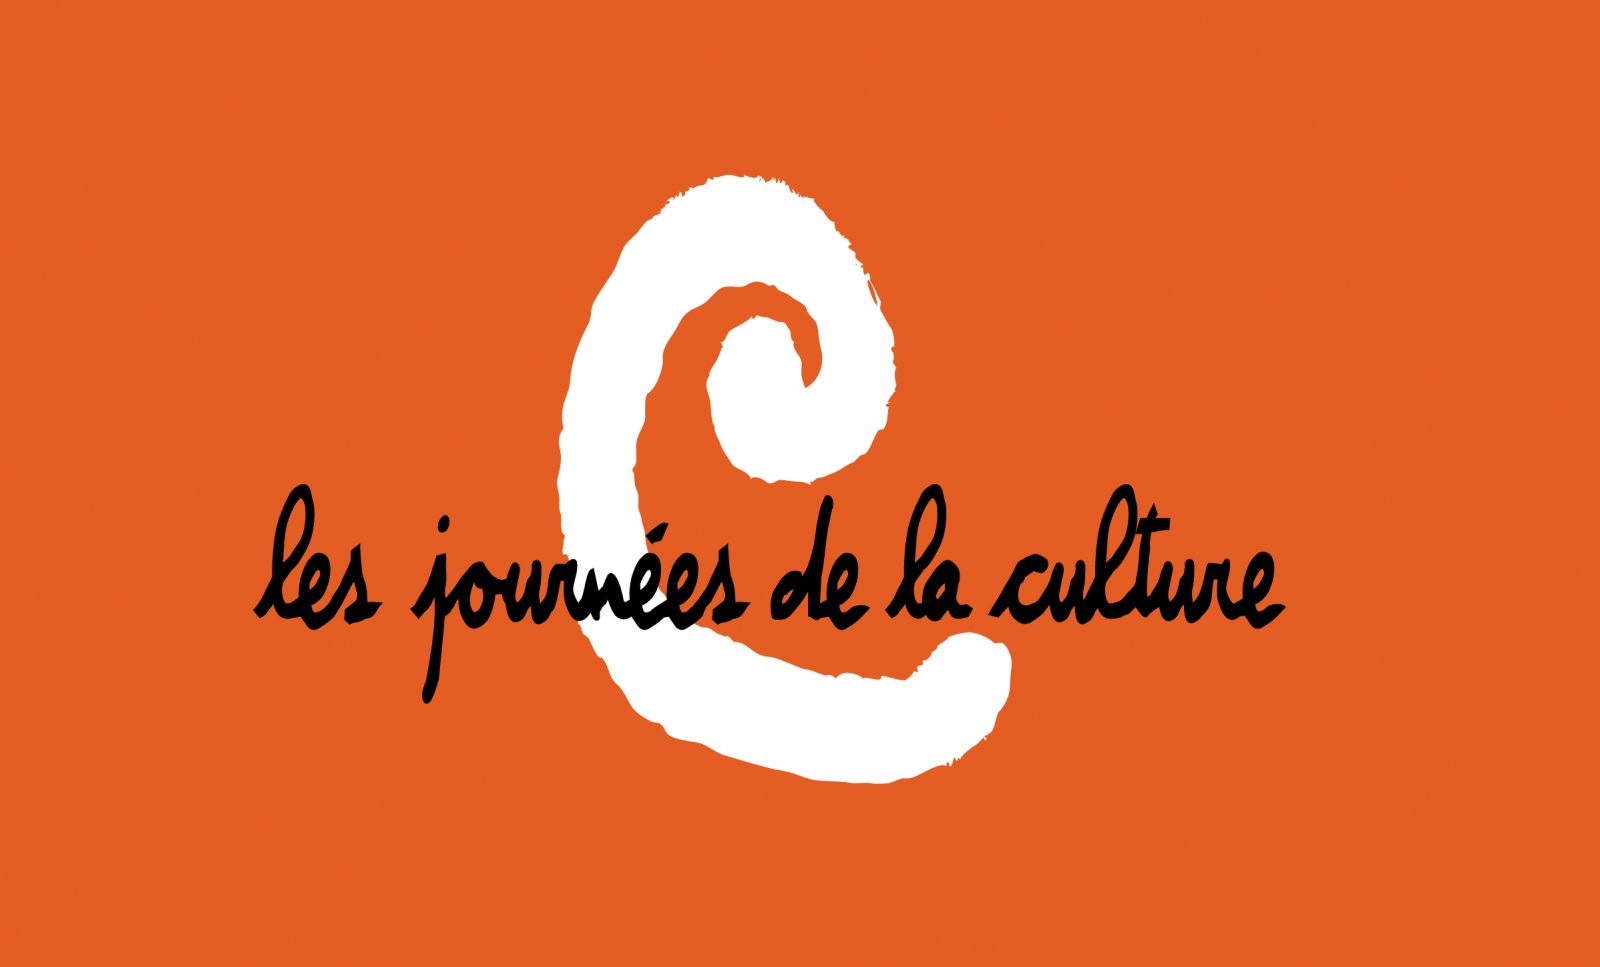 Les Journées de la Culture, les 28, 29 et 30 septembre 2018 à Varennes